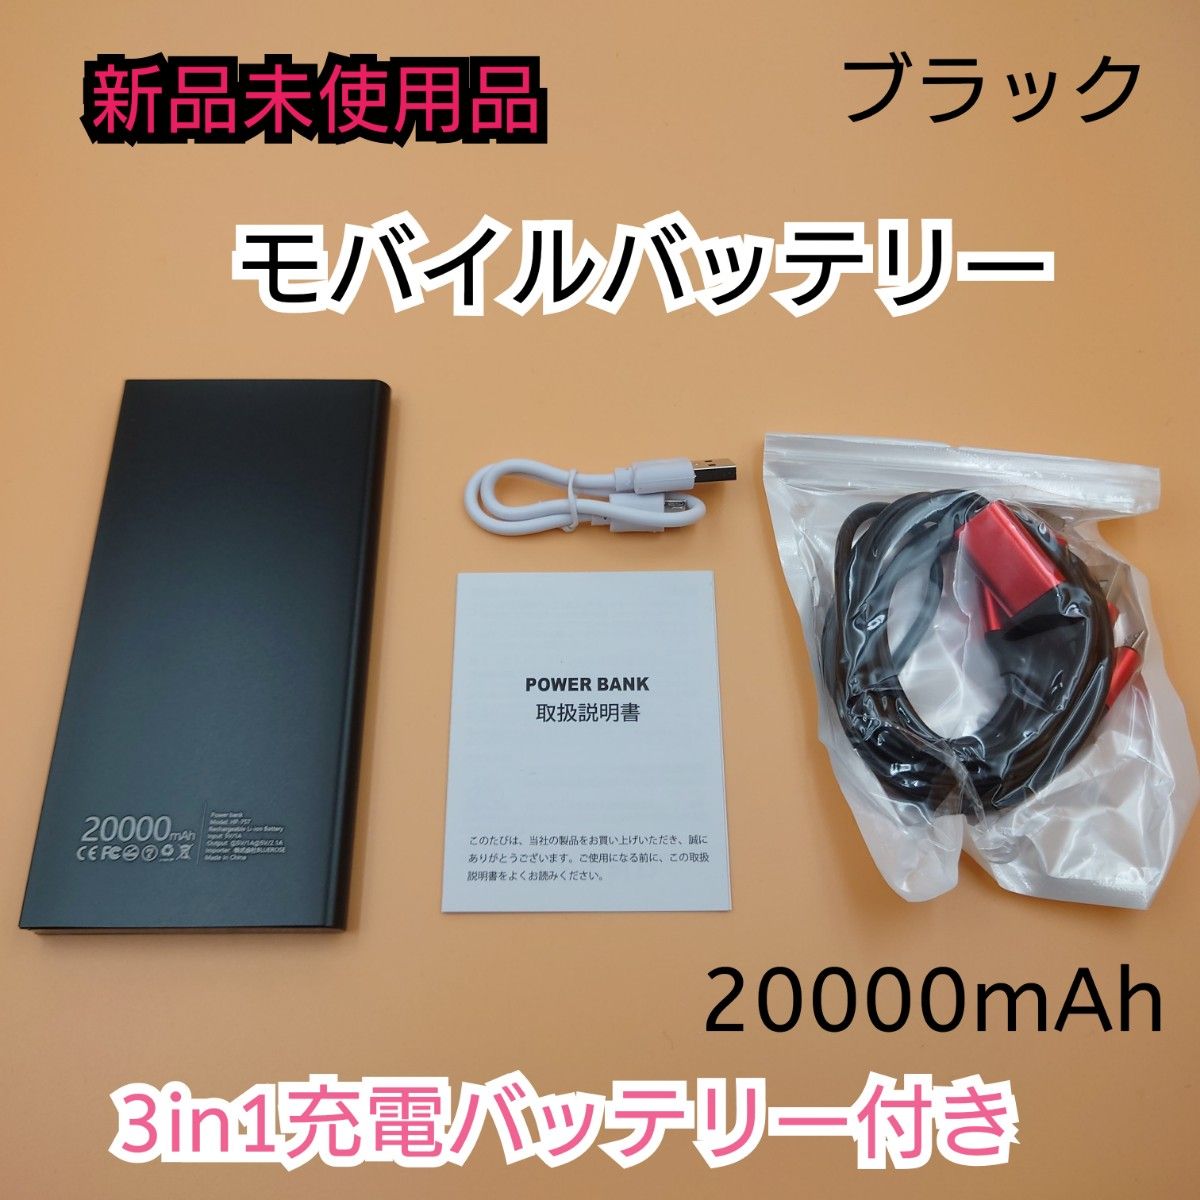 【新品未使用品】モバイルバッテリー 20000mAh ブラック